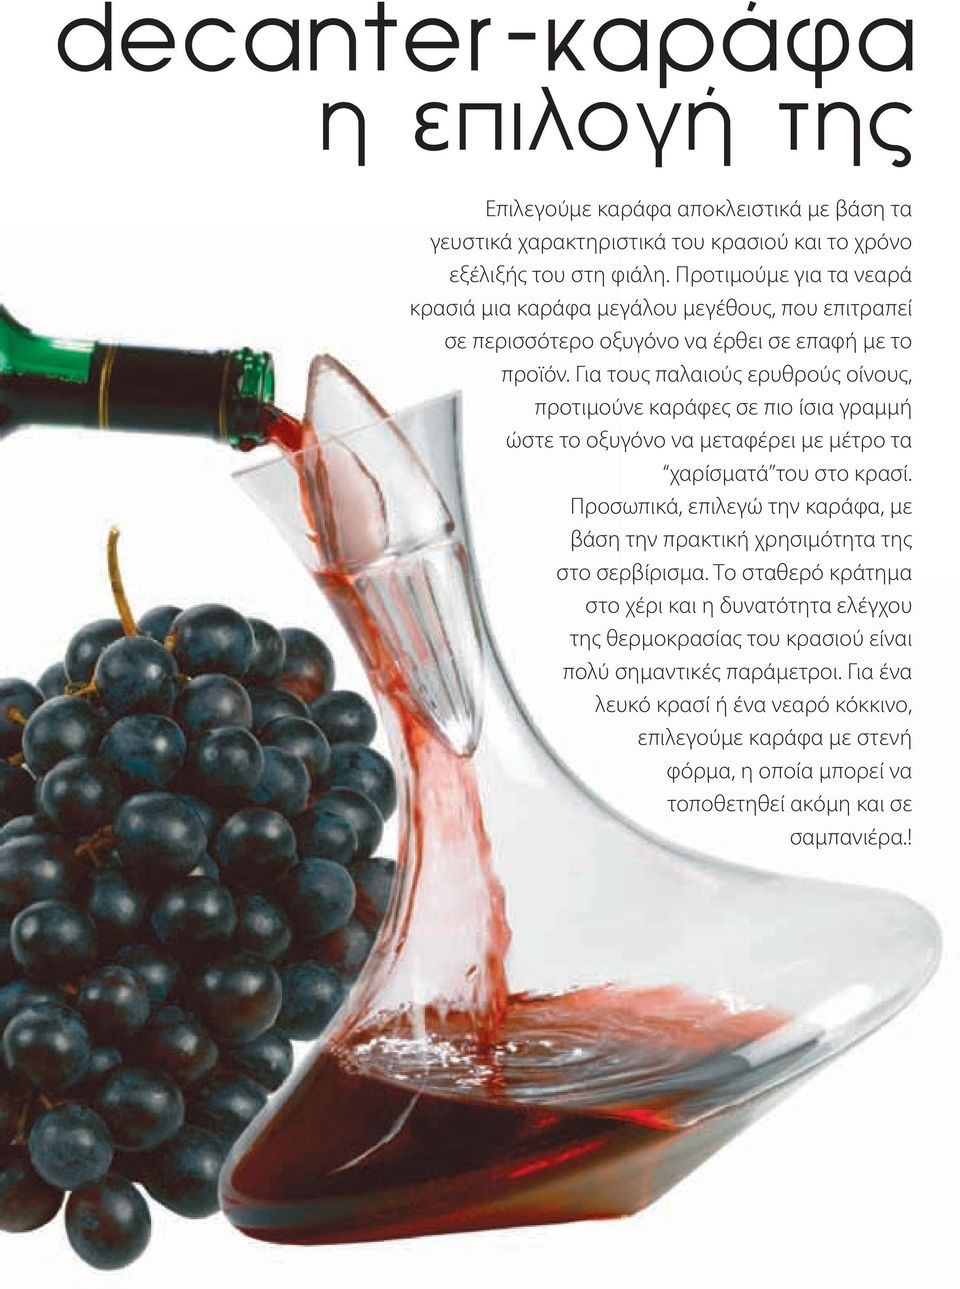 Για τους παλαιούς ερυθρούς οίνους, προτιμούνε καράφες σε πιο ίσια γραμμή ώστε το οξυγόνο να μεταφέρει με μέτρο τα χαρίσματά του στο κρασί.